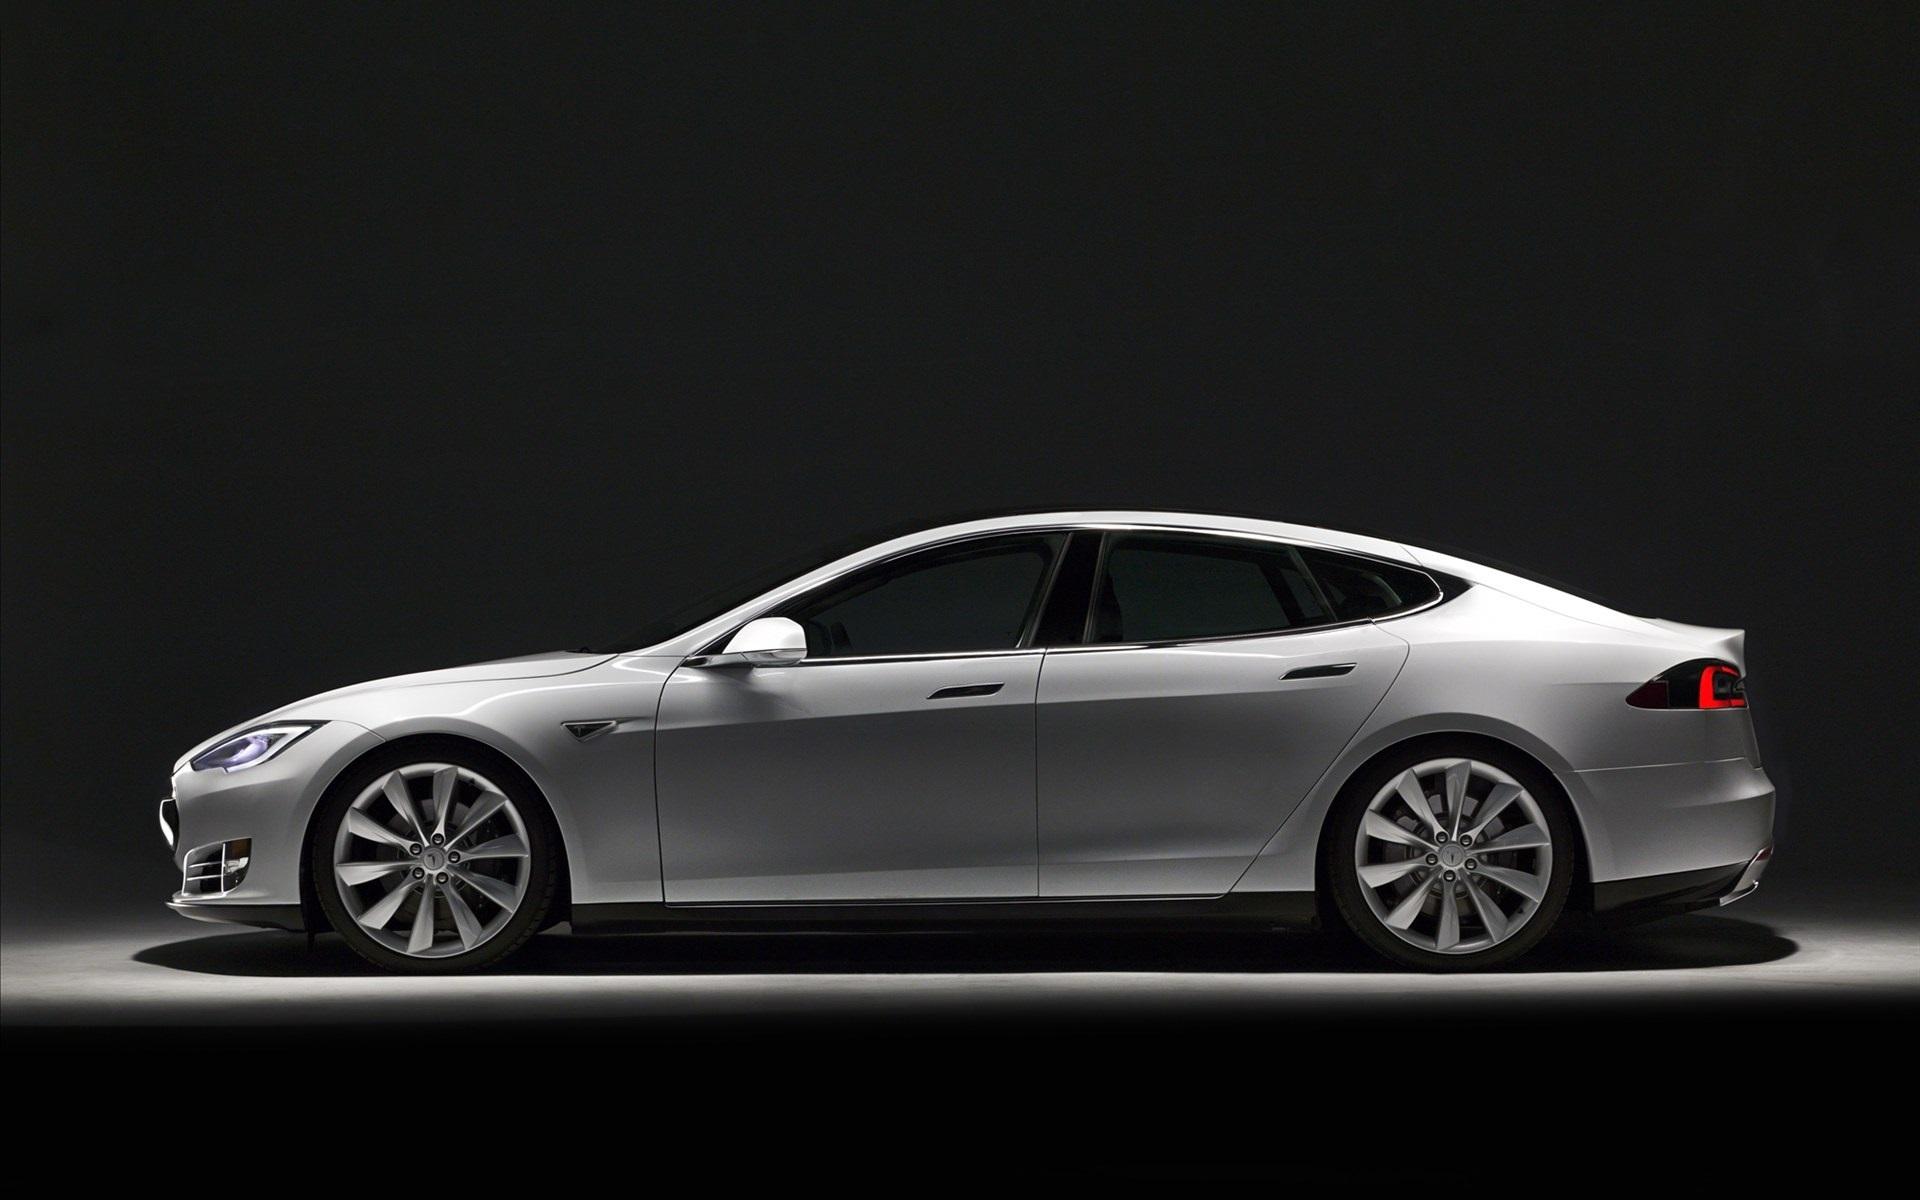 Tesla Model S Wallpaper 1080p Car Wallpaper Car Wallpaper